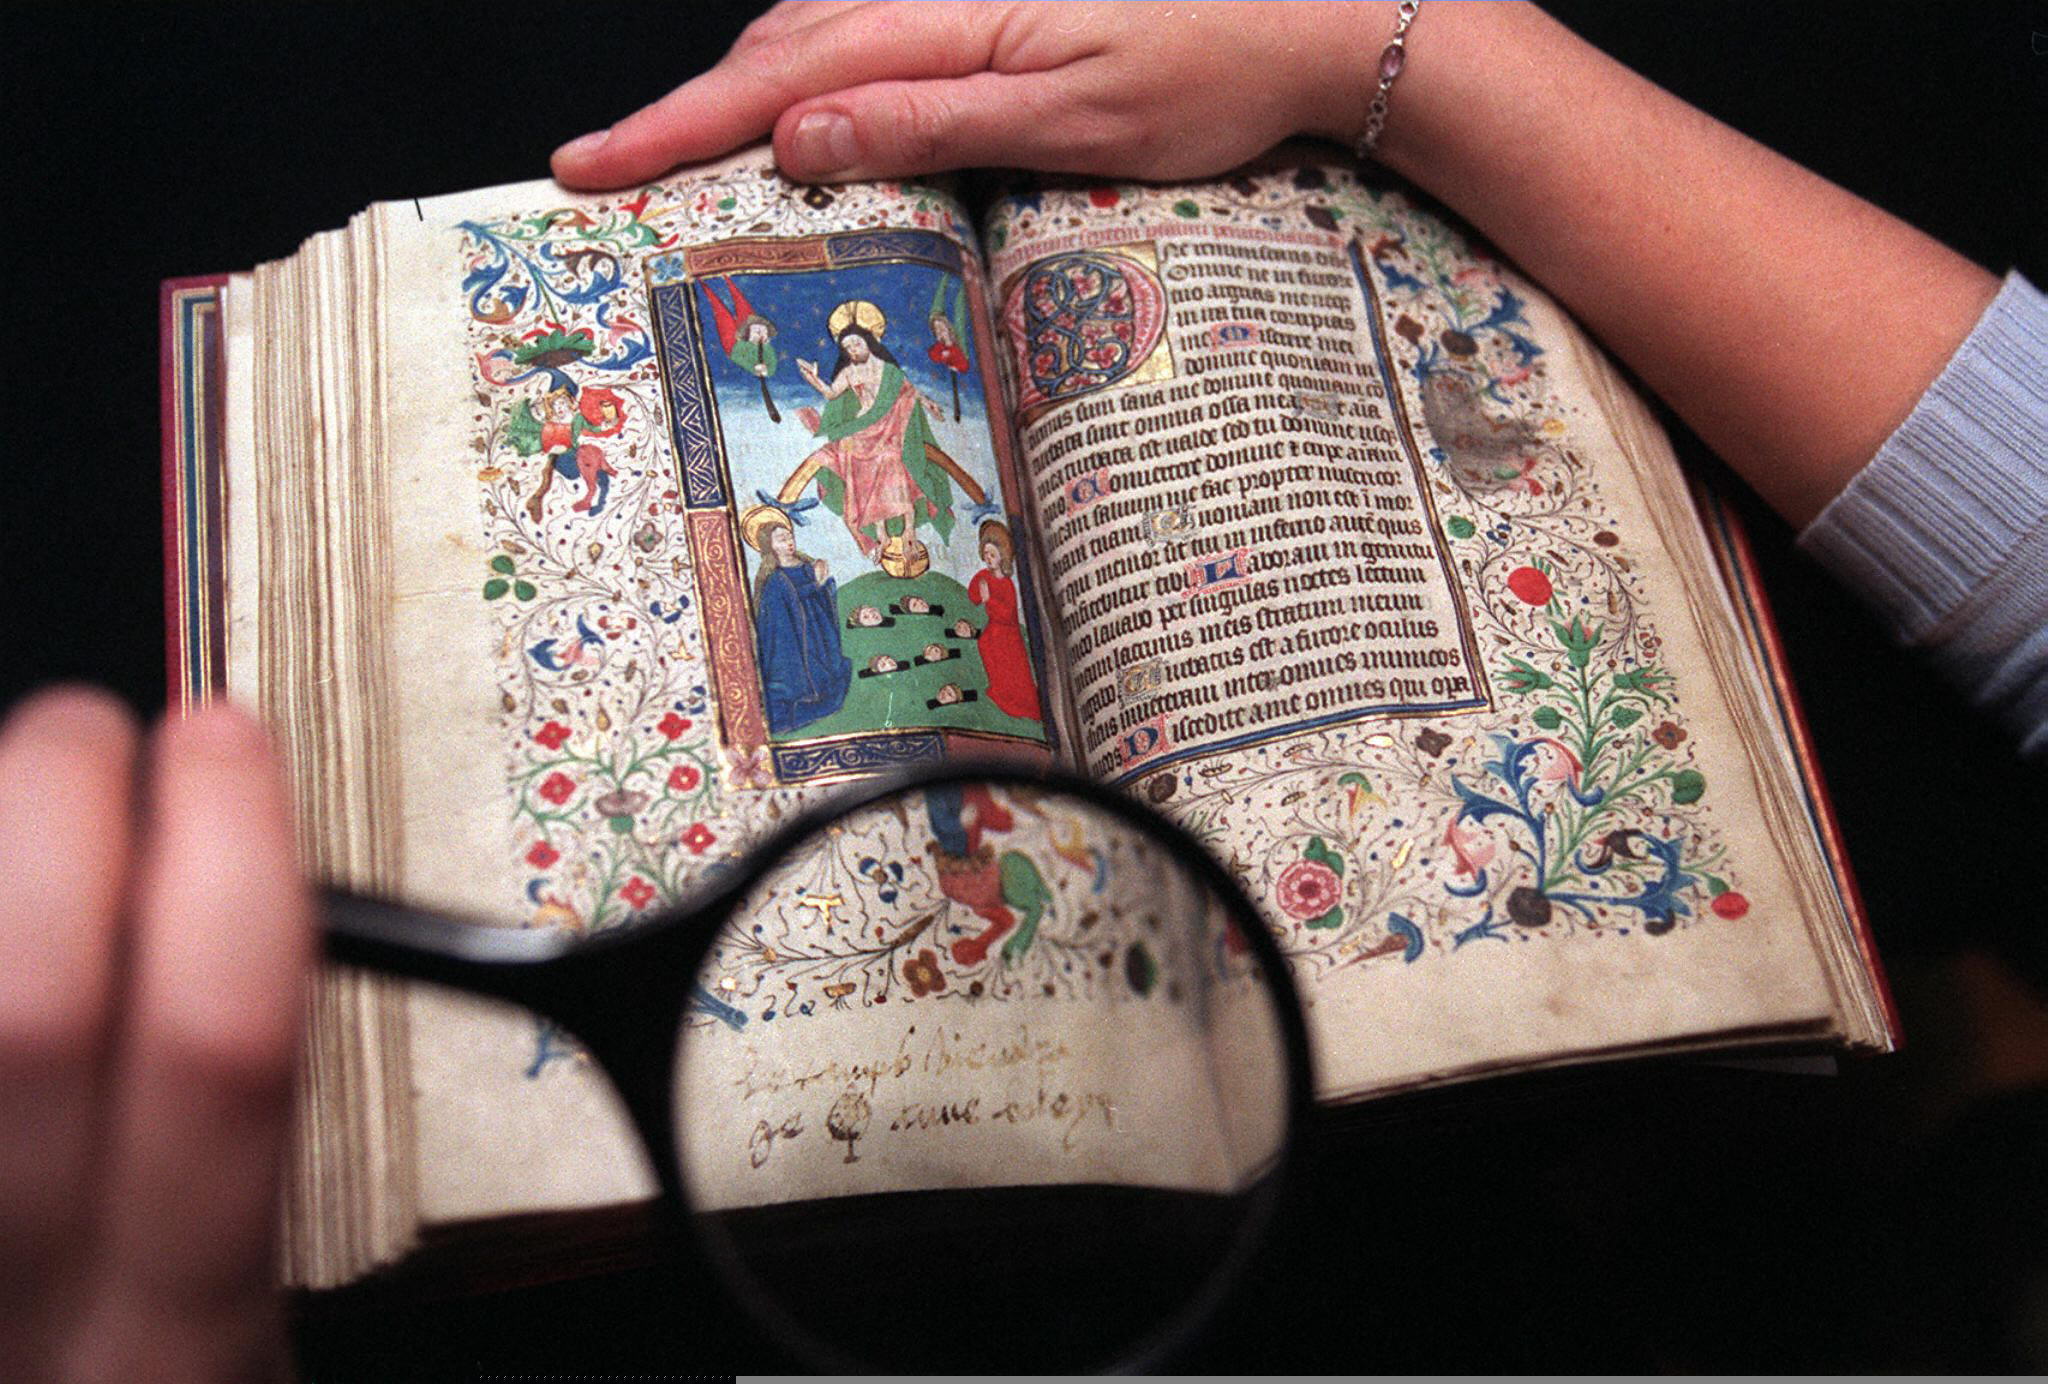 Rejtett beírásokat fedeztek fel az imakönyvben, amit Boleyn Anna a kivégzése előtt olvasott